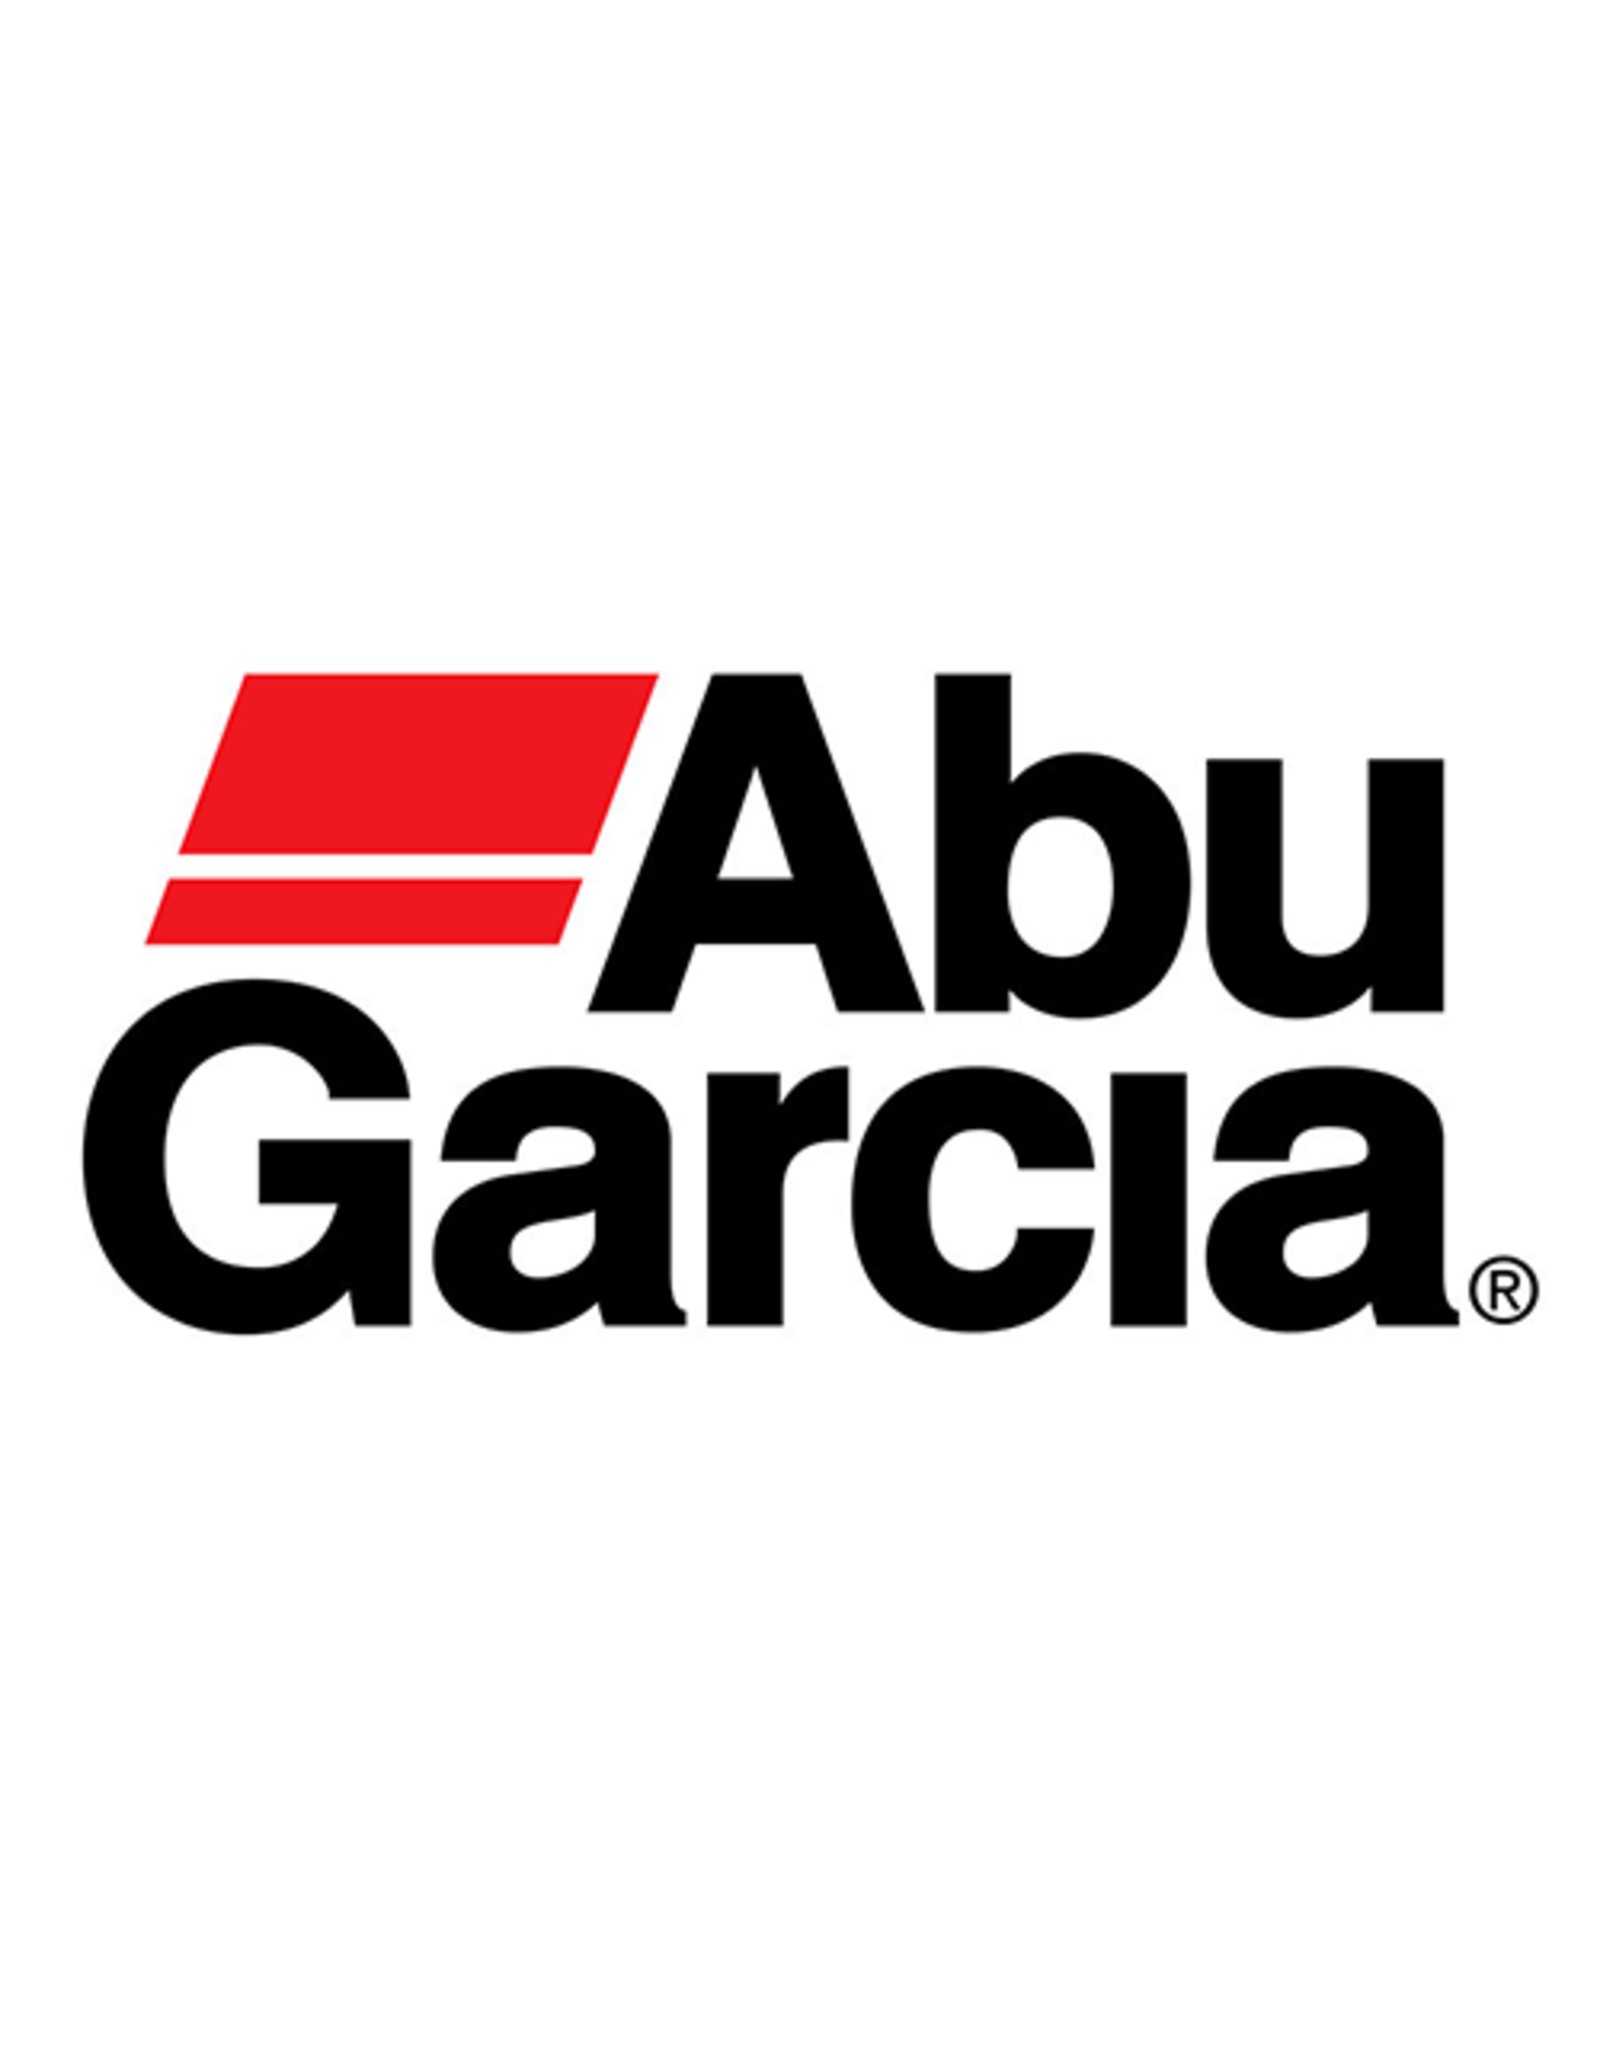 Abu Garcia 9083442  TRANSFER GEAR/ NLA